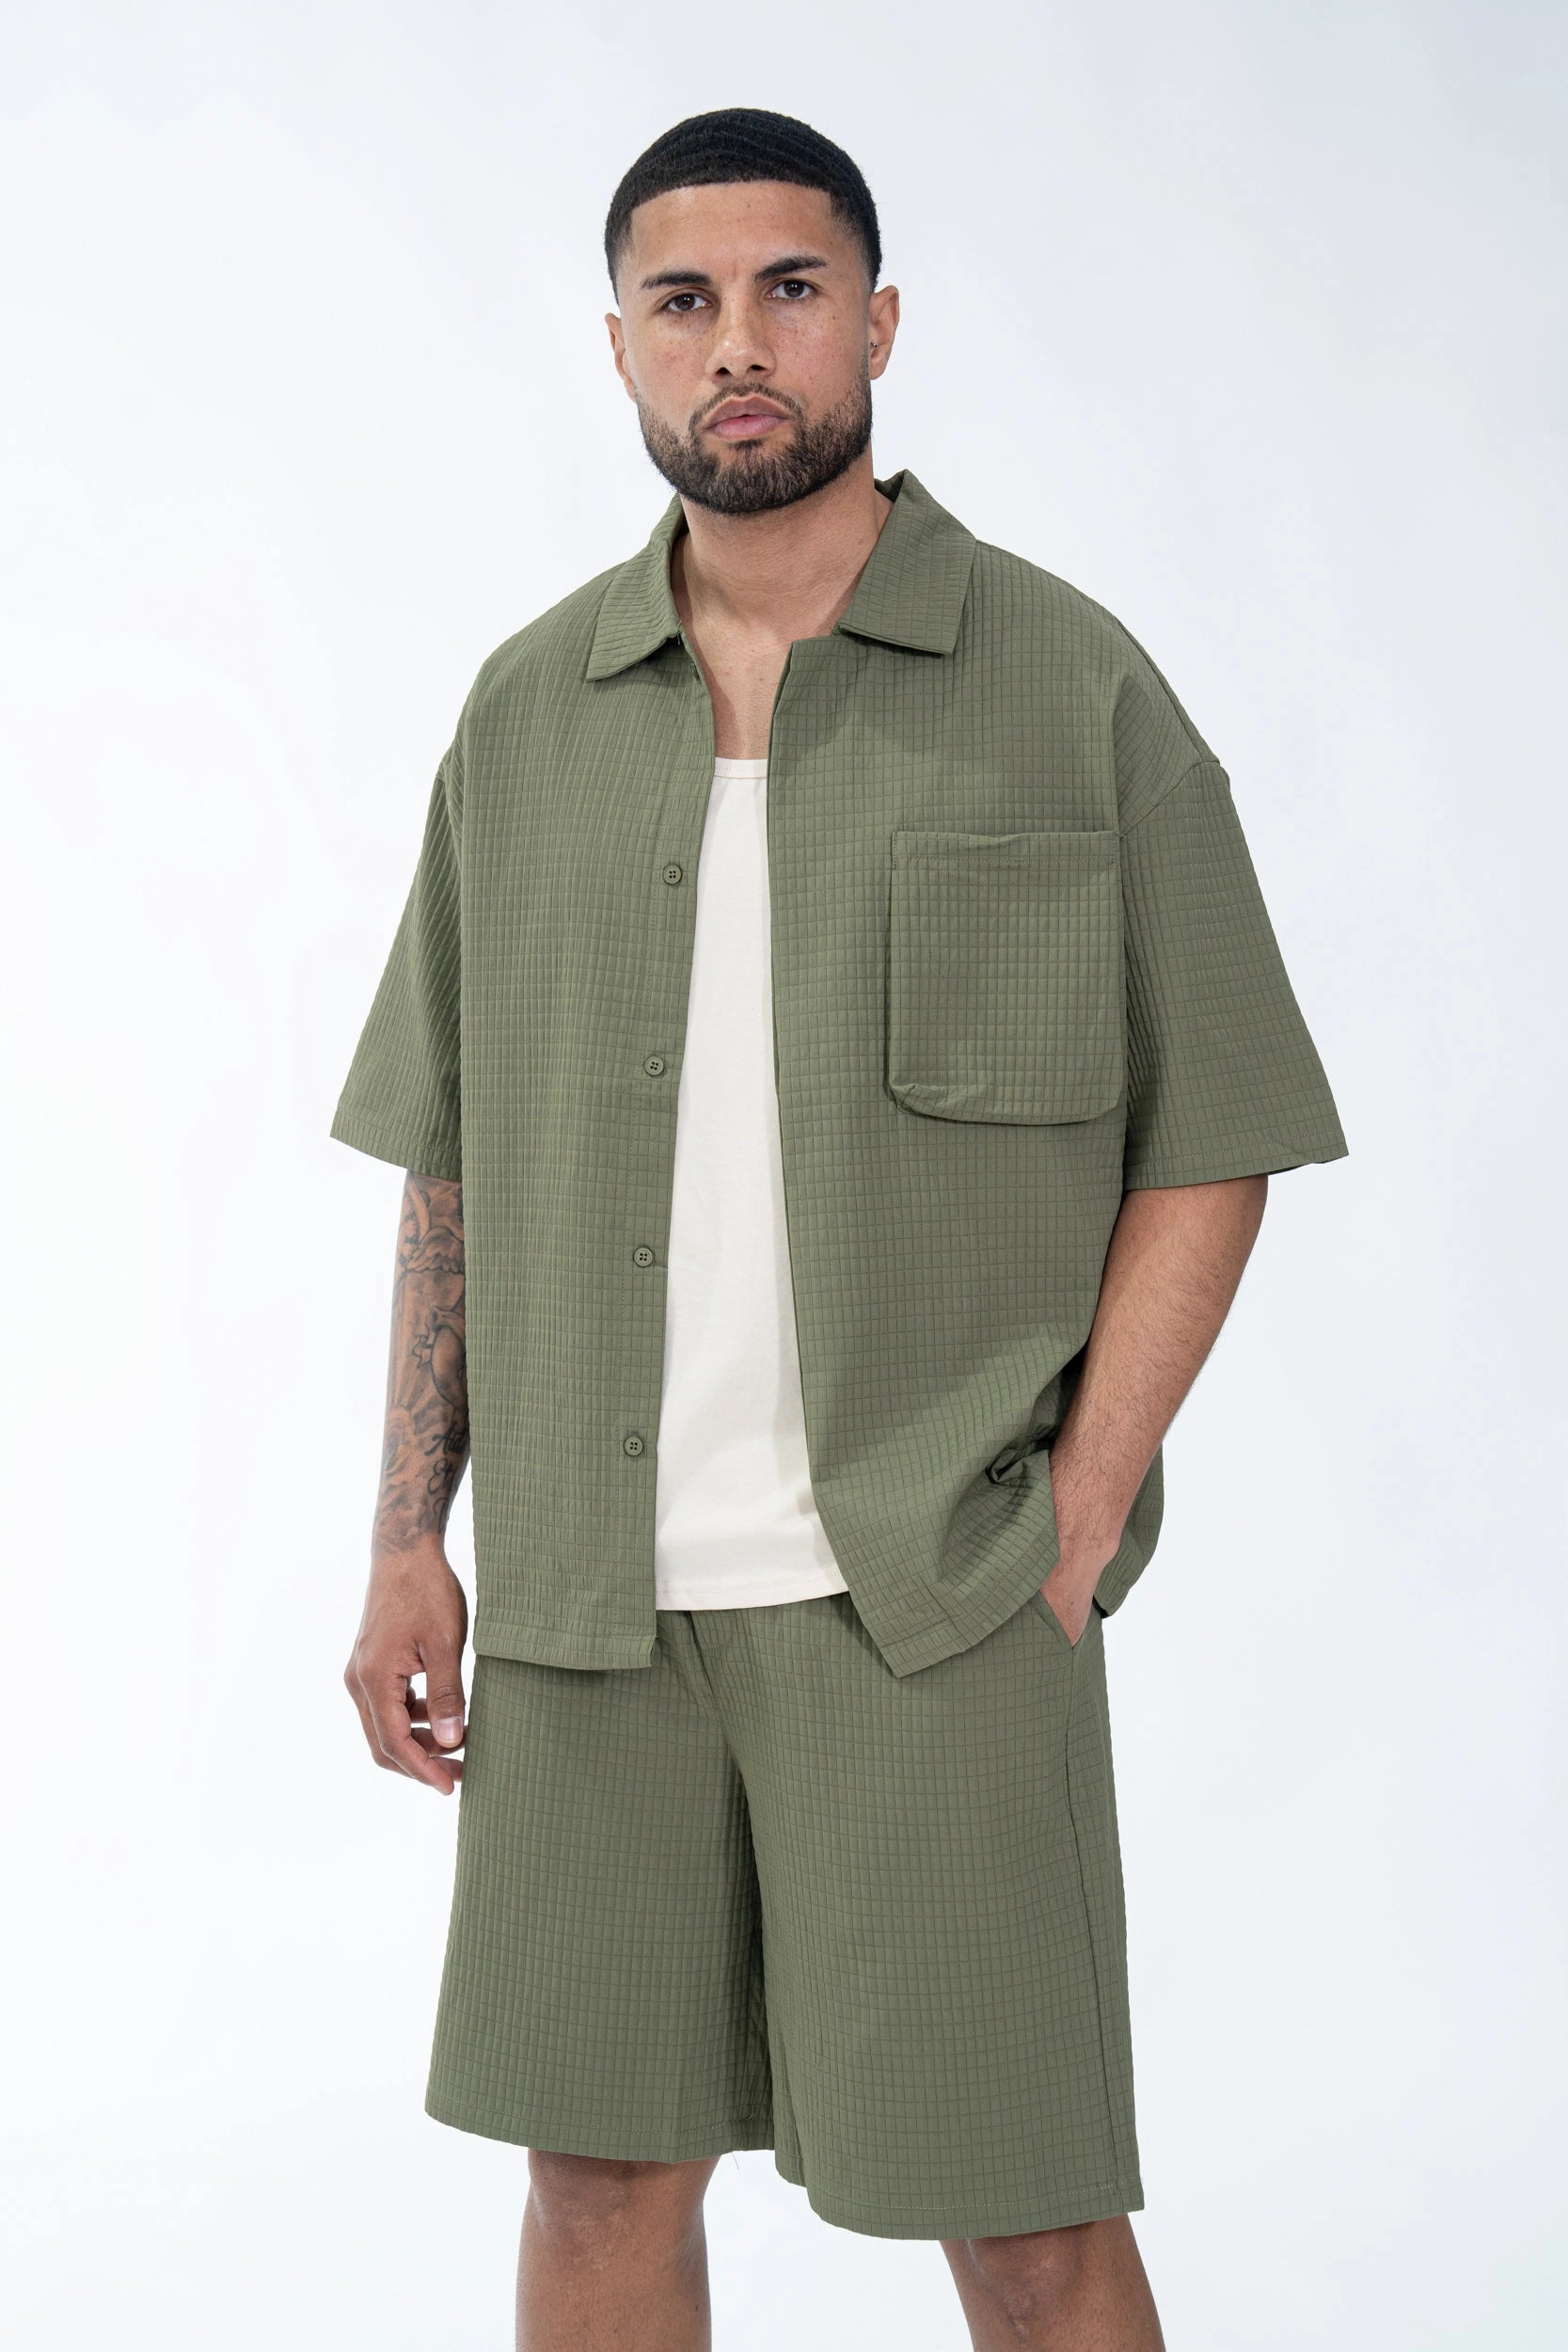 Textured plain shirt shorts set